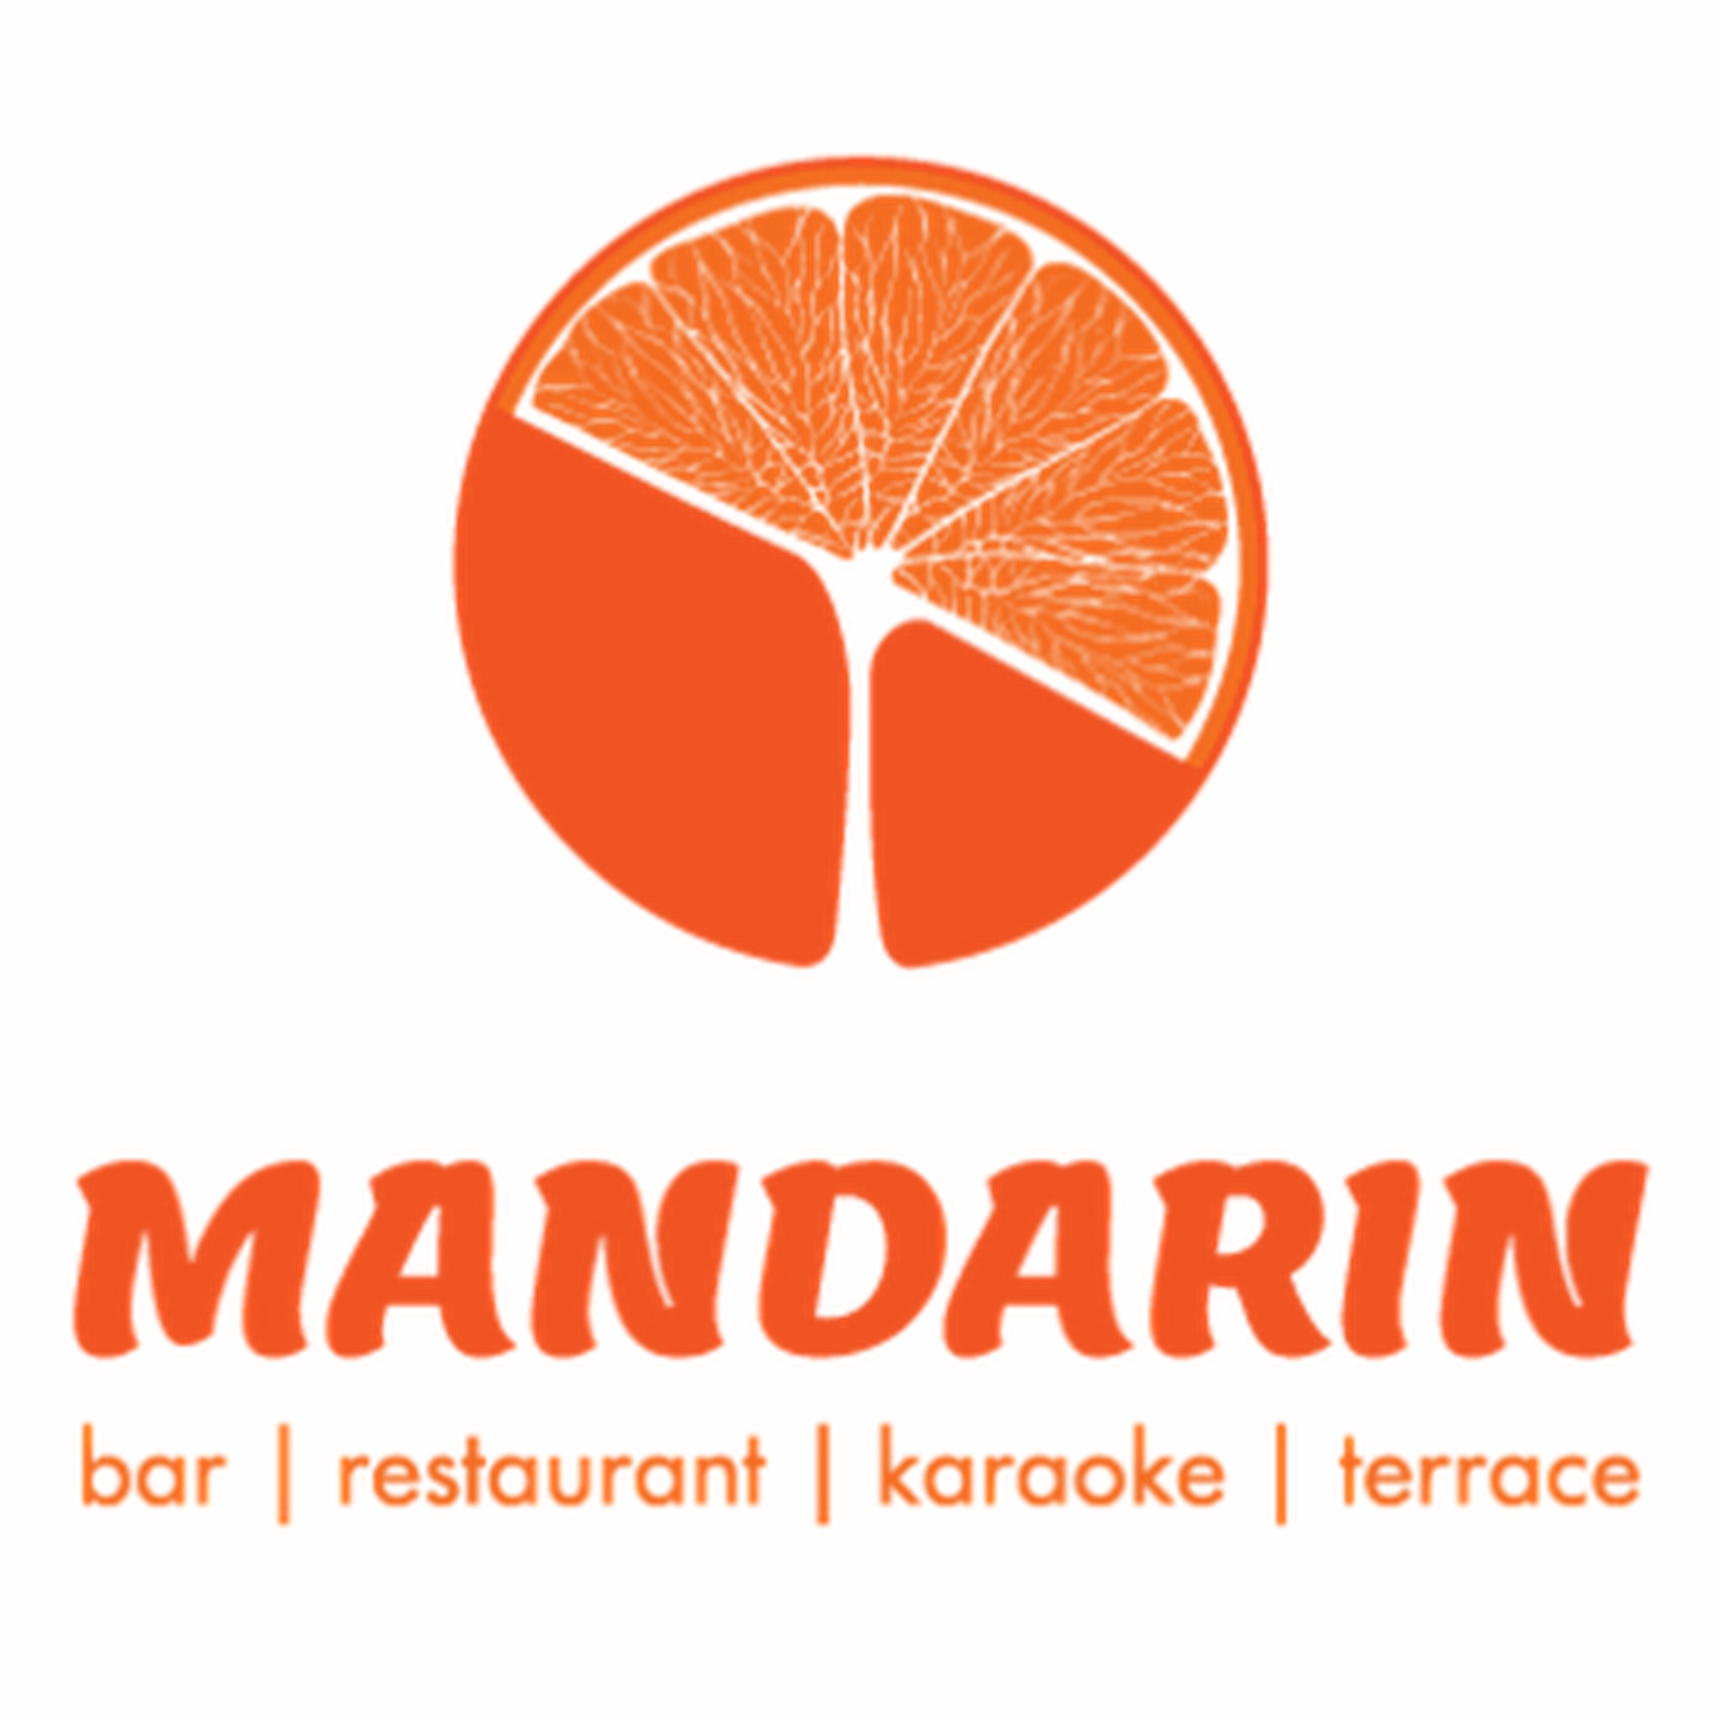 Мандарин займ. Мандарин. Мандарин логотип. Мандарин ресторан логотип. ТРЦ мандарин в Сочи логотип.